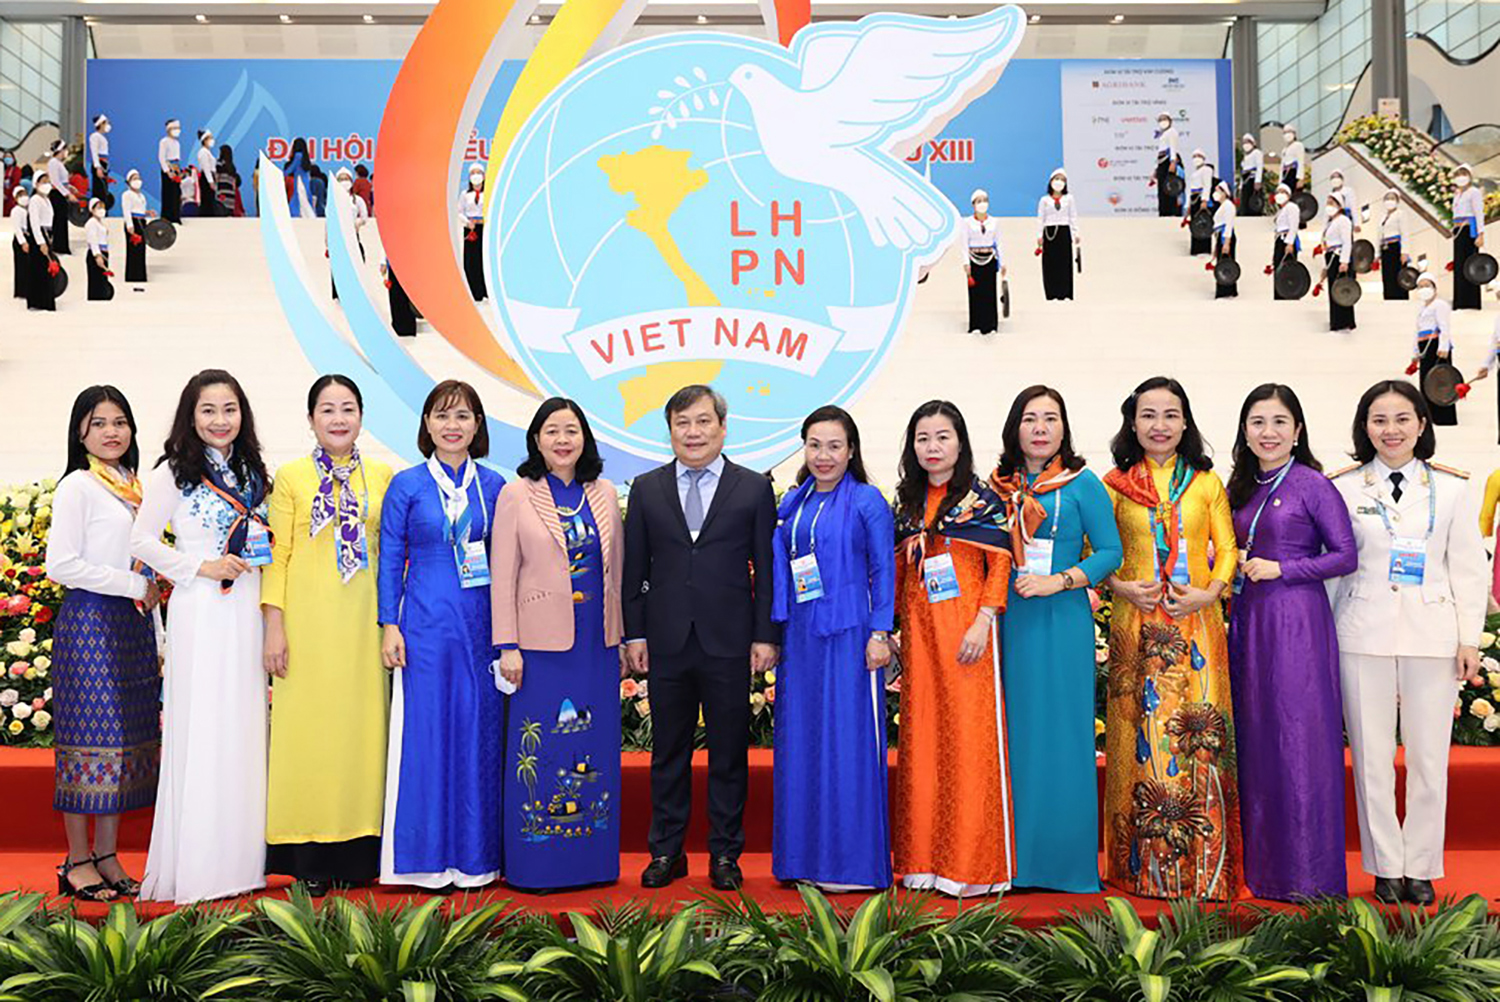 Đồng chí Diệp Thị Minh Quyết trúng cử Ban Chấp hành Trung ương Hội LHPN Việt Nam khóa XIII